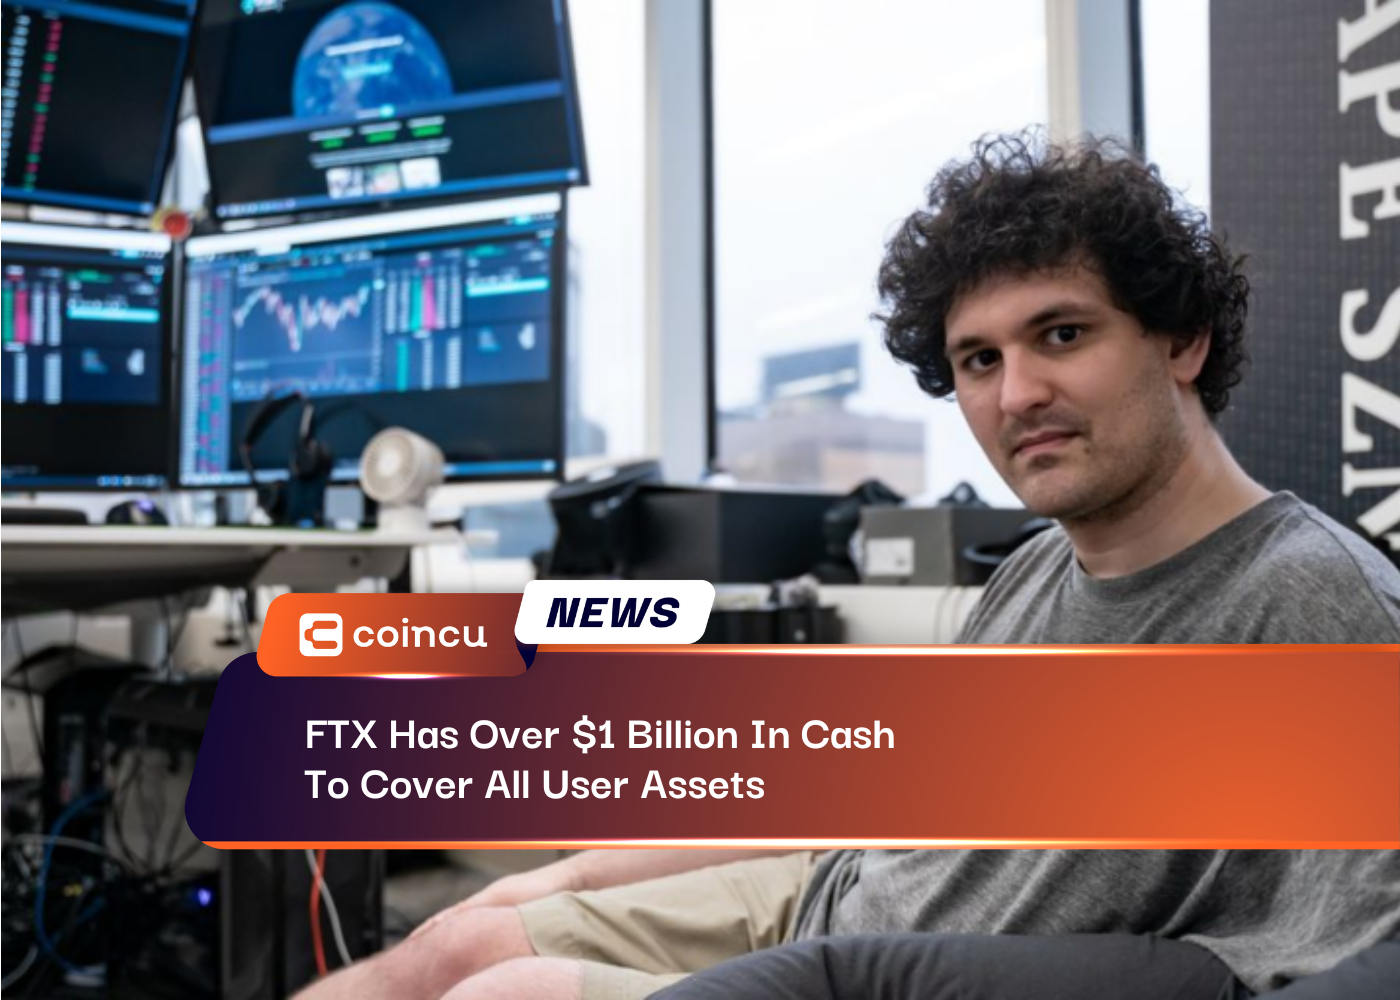 FTX verfügt über mehr als 1 Milliarde US-Dollar an Bargeld zur Deckung aller Benutzervermögenswerte